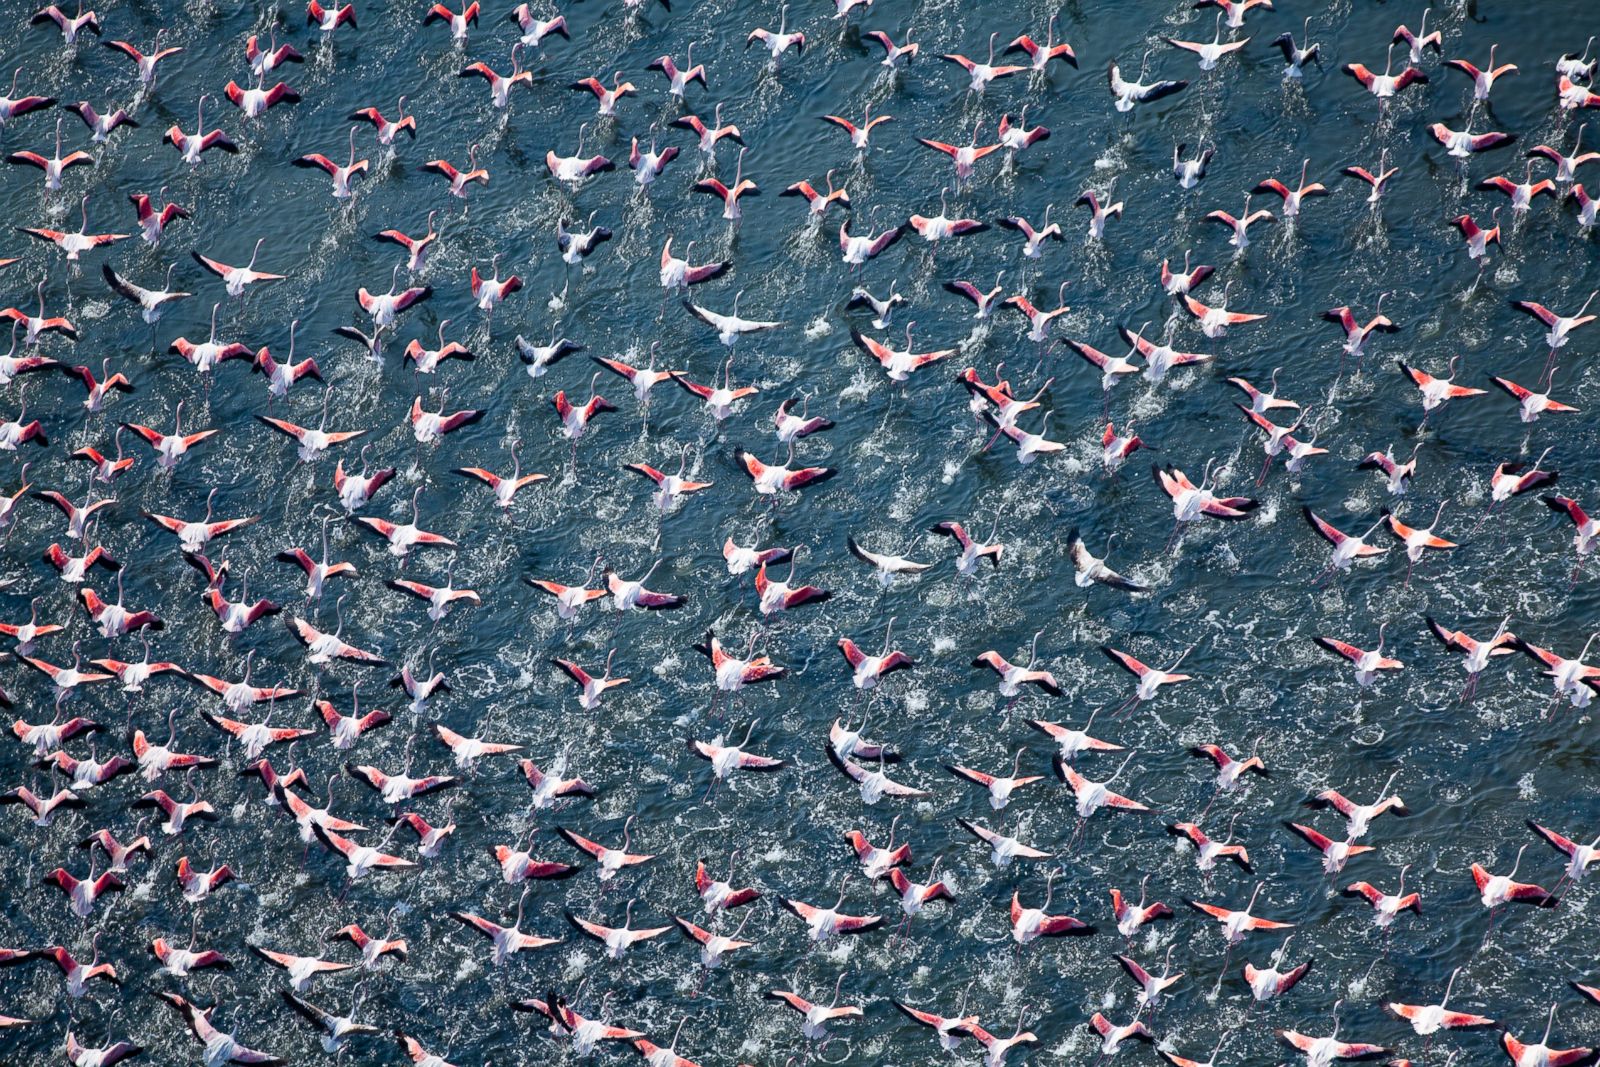 Flamingos Taking Flight in Rosolina, Italy